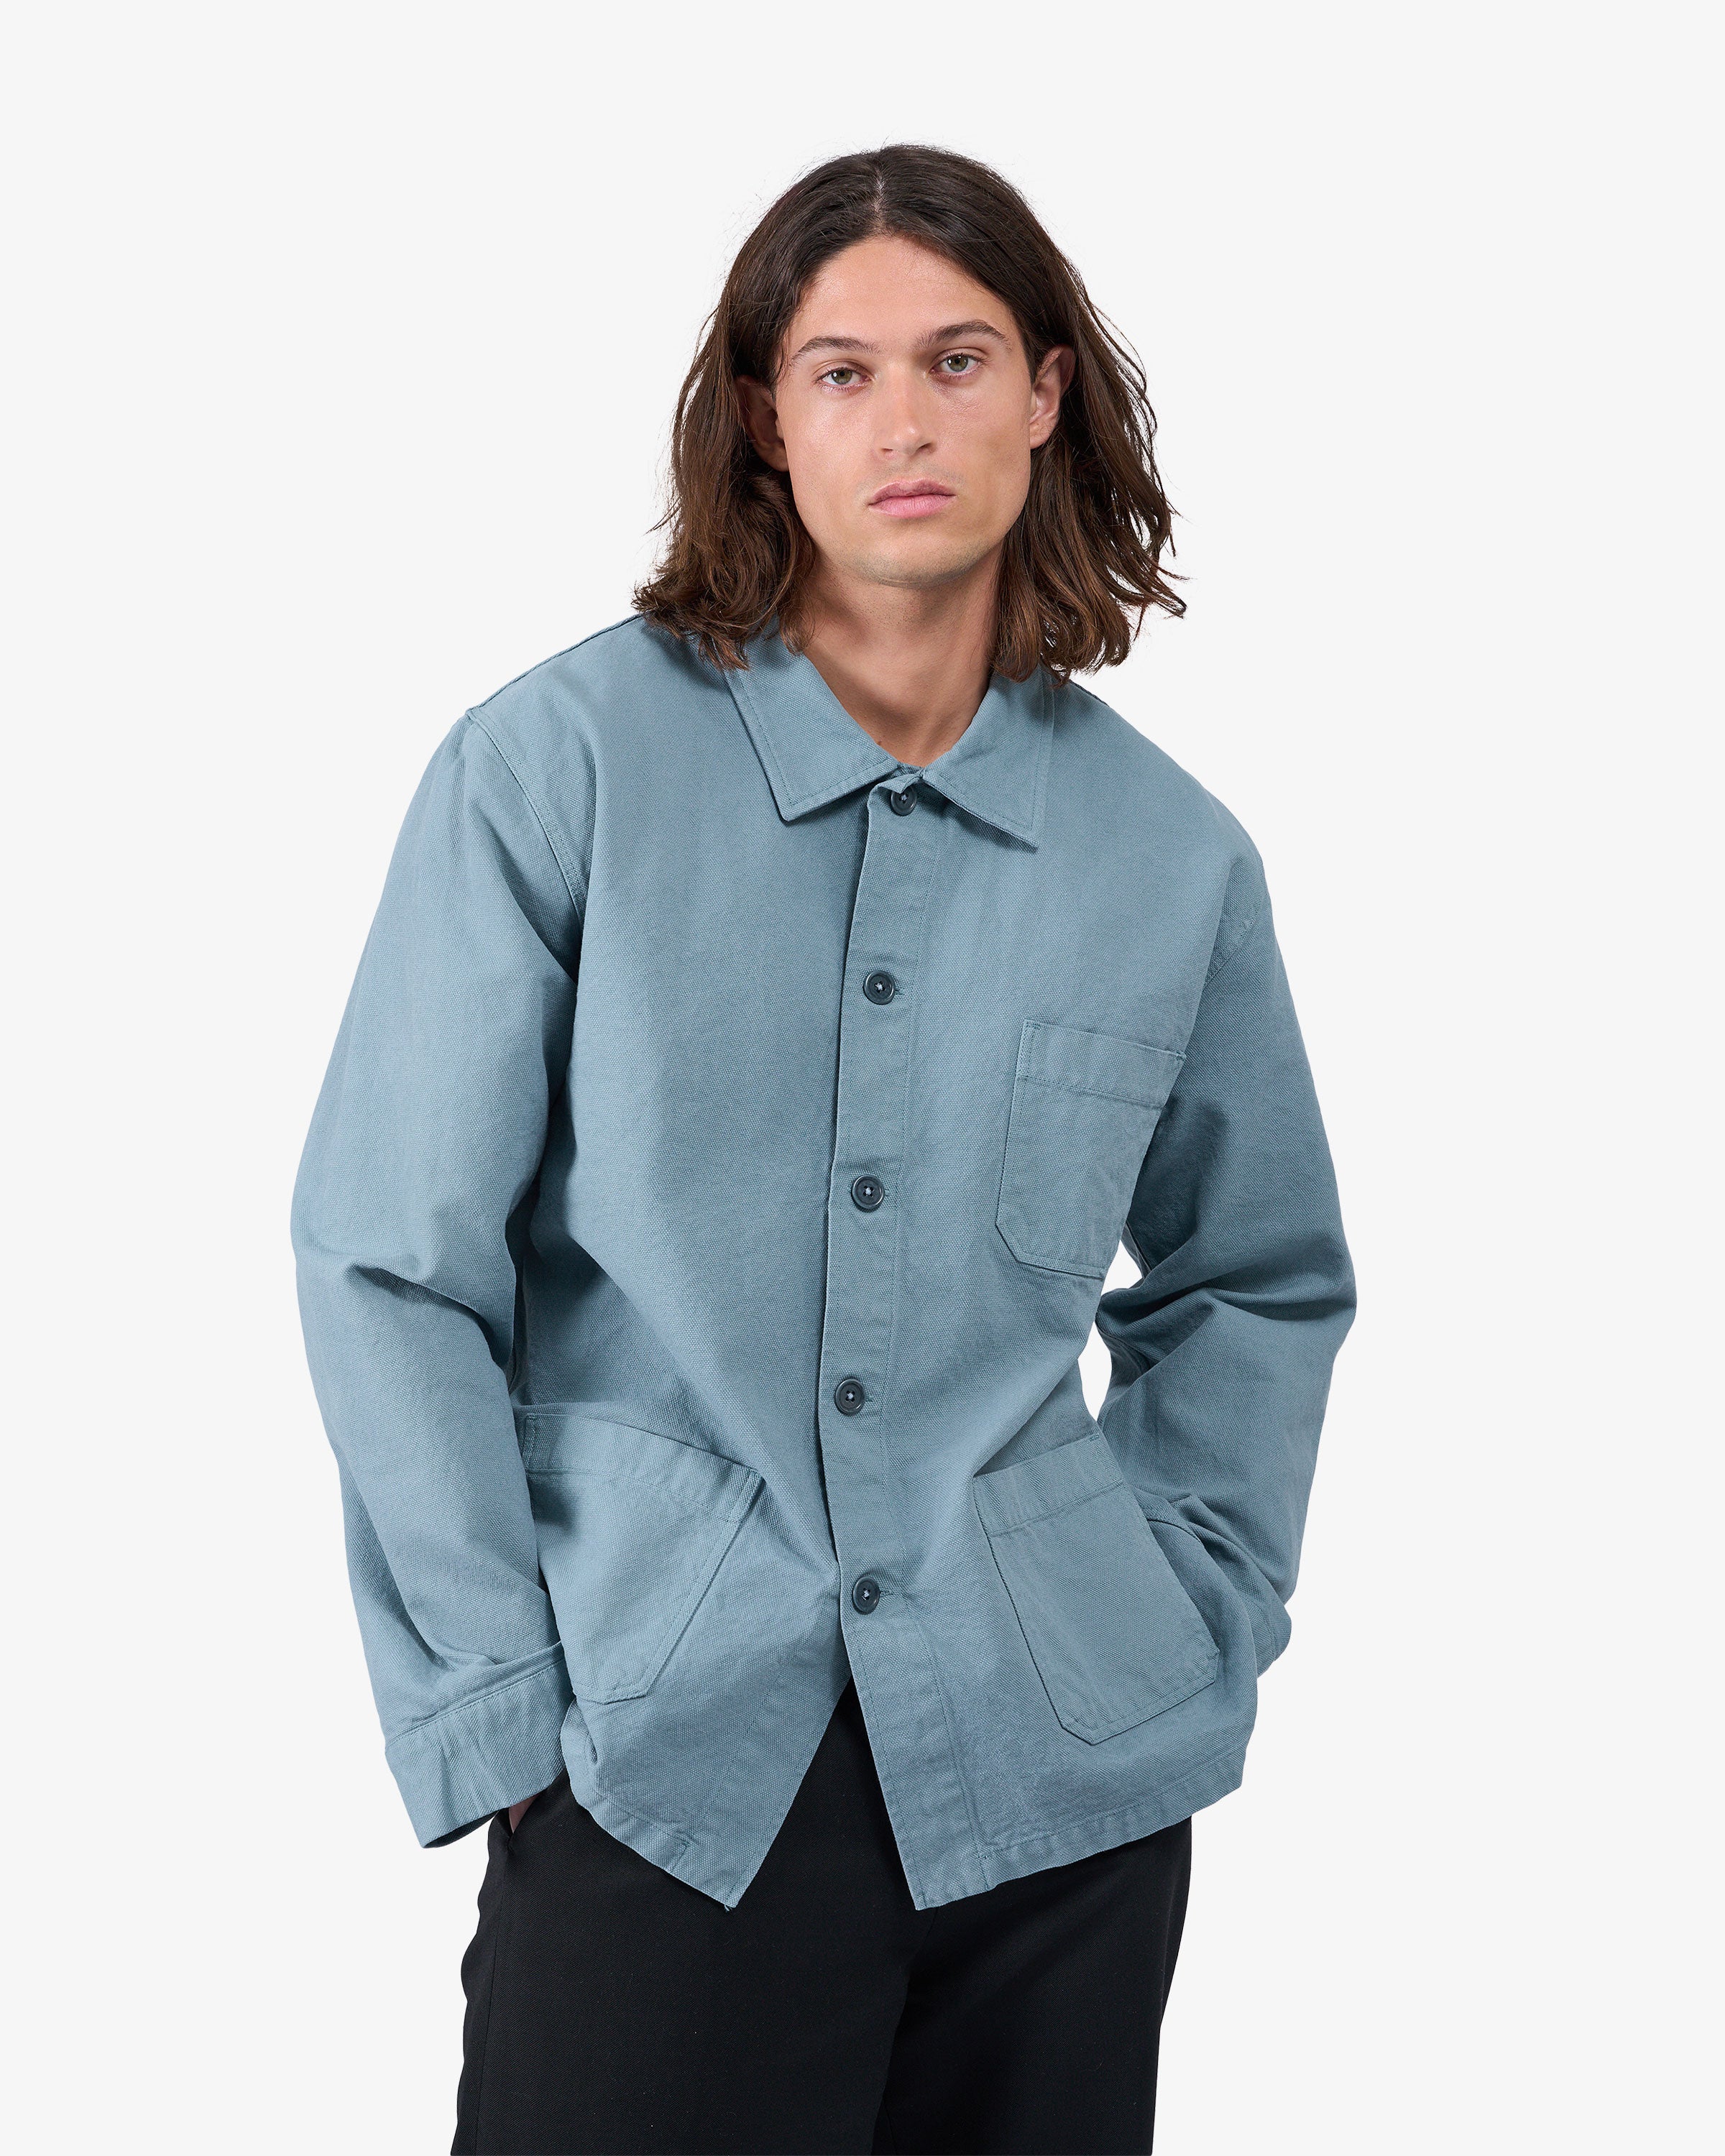 Organic Workwear Jacket - Stone Blue